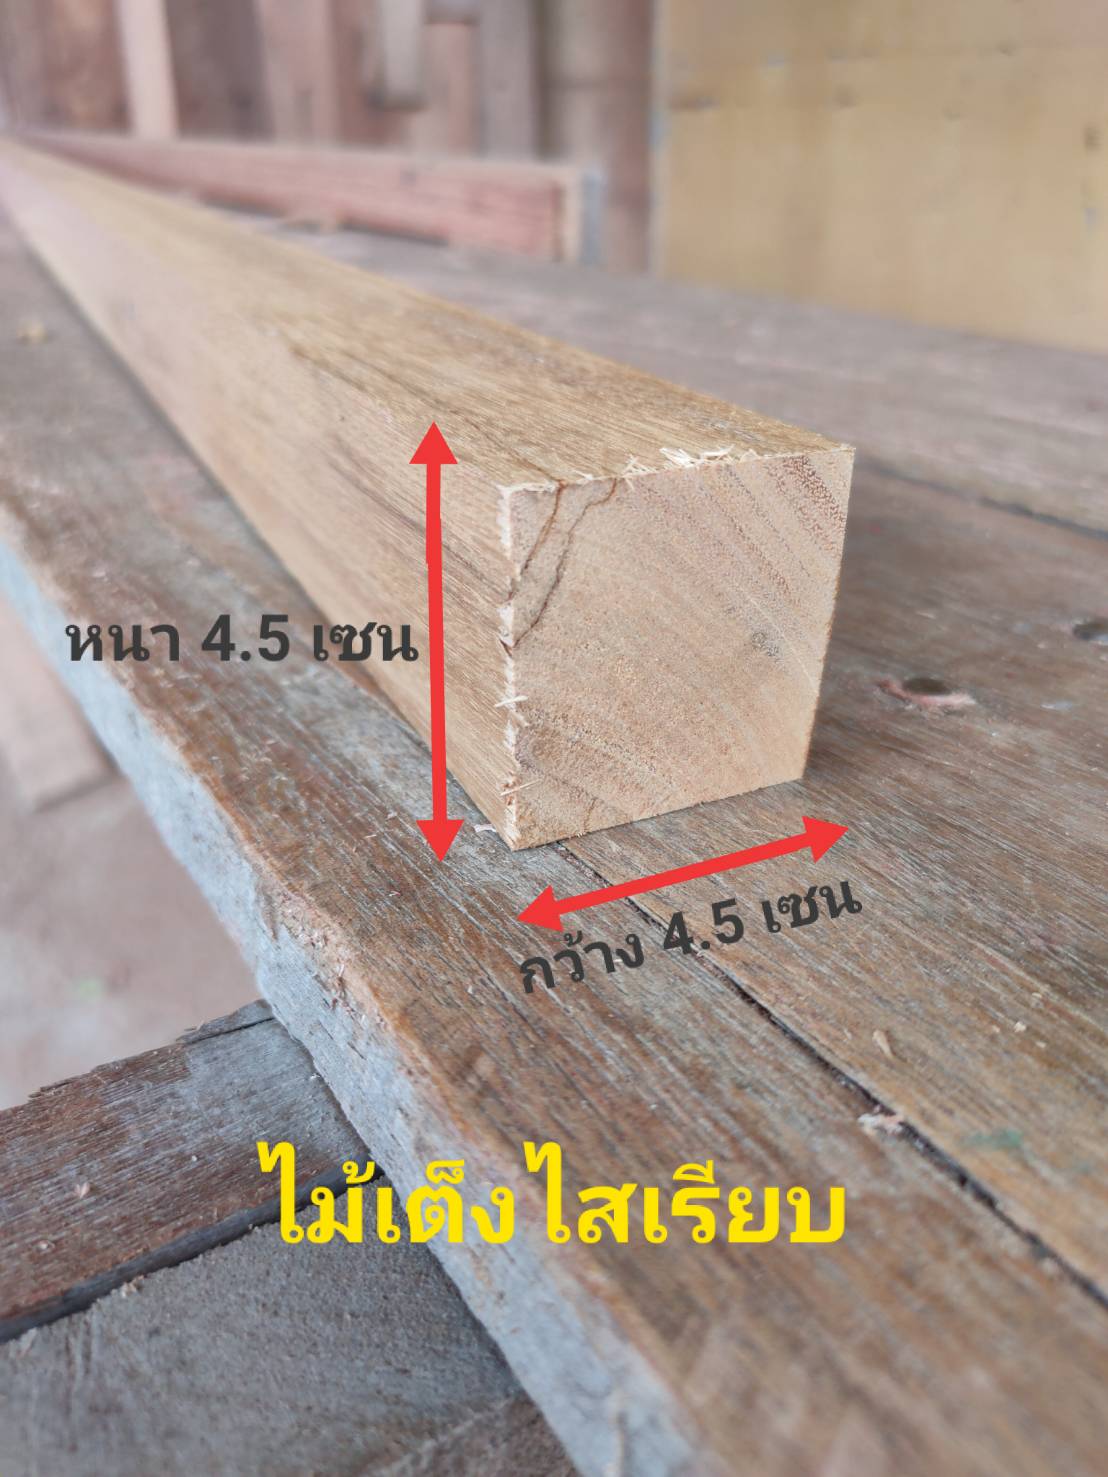 HTwood ไม้เต็งไสเรียบ หนา4.5 เซน X กว้าง4.5 เซน X ความยาว 40-200 เซน ไม้เต็งไสเรียบ ไม้ไม่ต่อ ใช้ตกแต่งบ้าน ทำไม้ขาโต๊ะ งาน DIY ไม้แผ่นสำเร็จ ไม้ต่อเติม ไม้แผ่นยาวไม้อเนกประสงค์ ไม้โครงส่งเร็วสามารถสั่งตัดขนาดพิเศษนอกเหนือจากที่ระบุได้